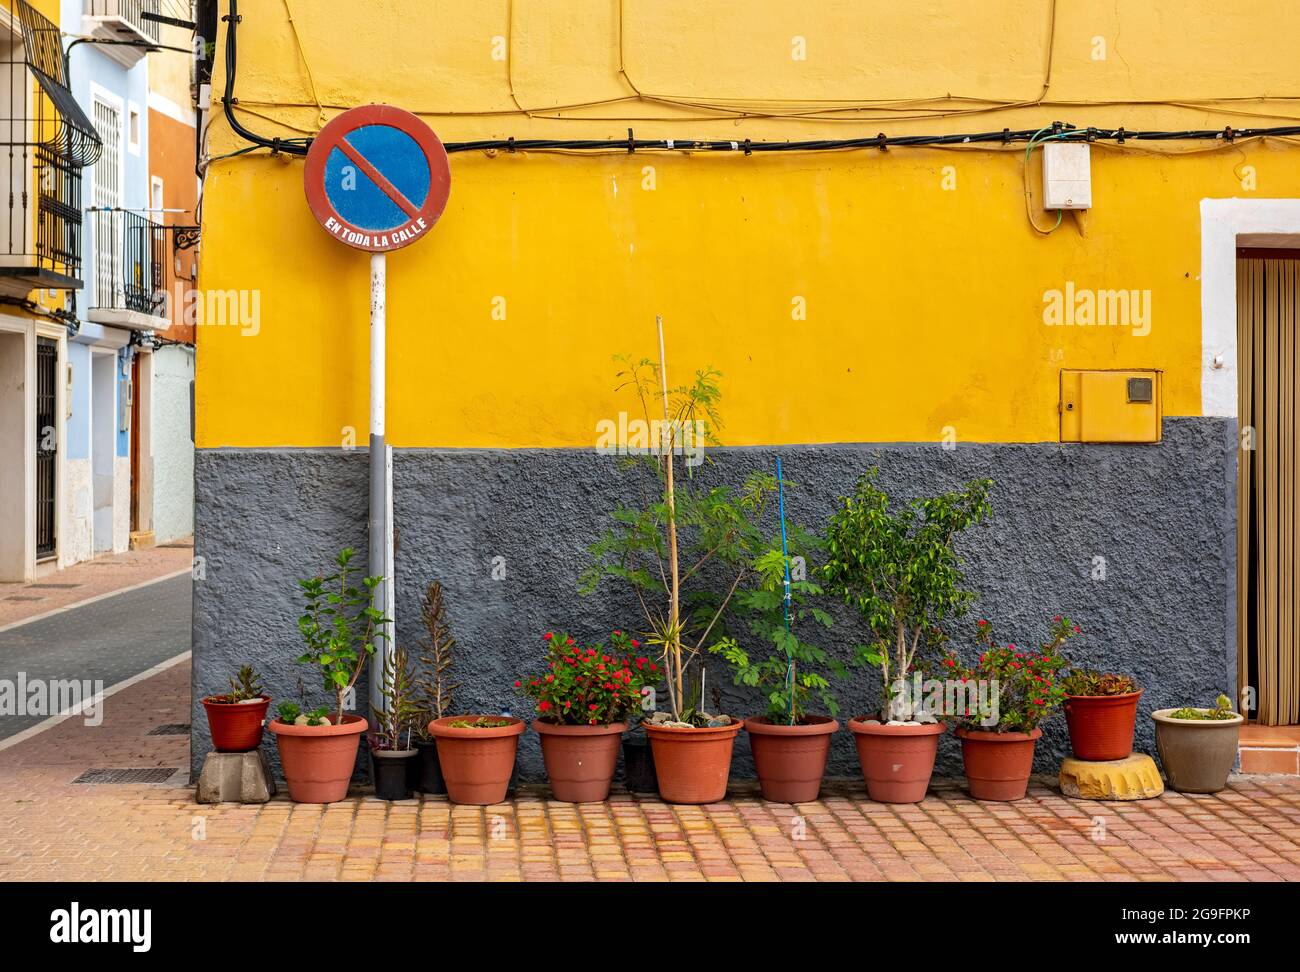 Keine wartenden Straßenschild und Blumentöpfe vor der gelben Wand, Villajoyosa, Spanien Stockfoto